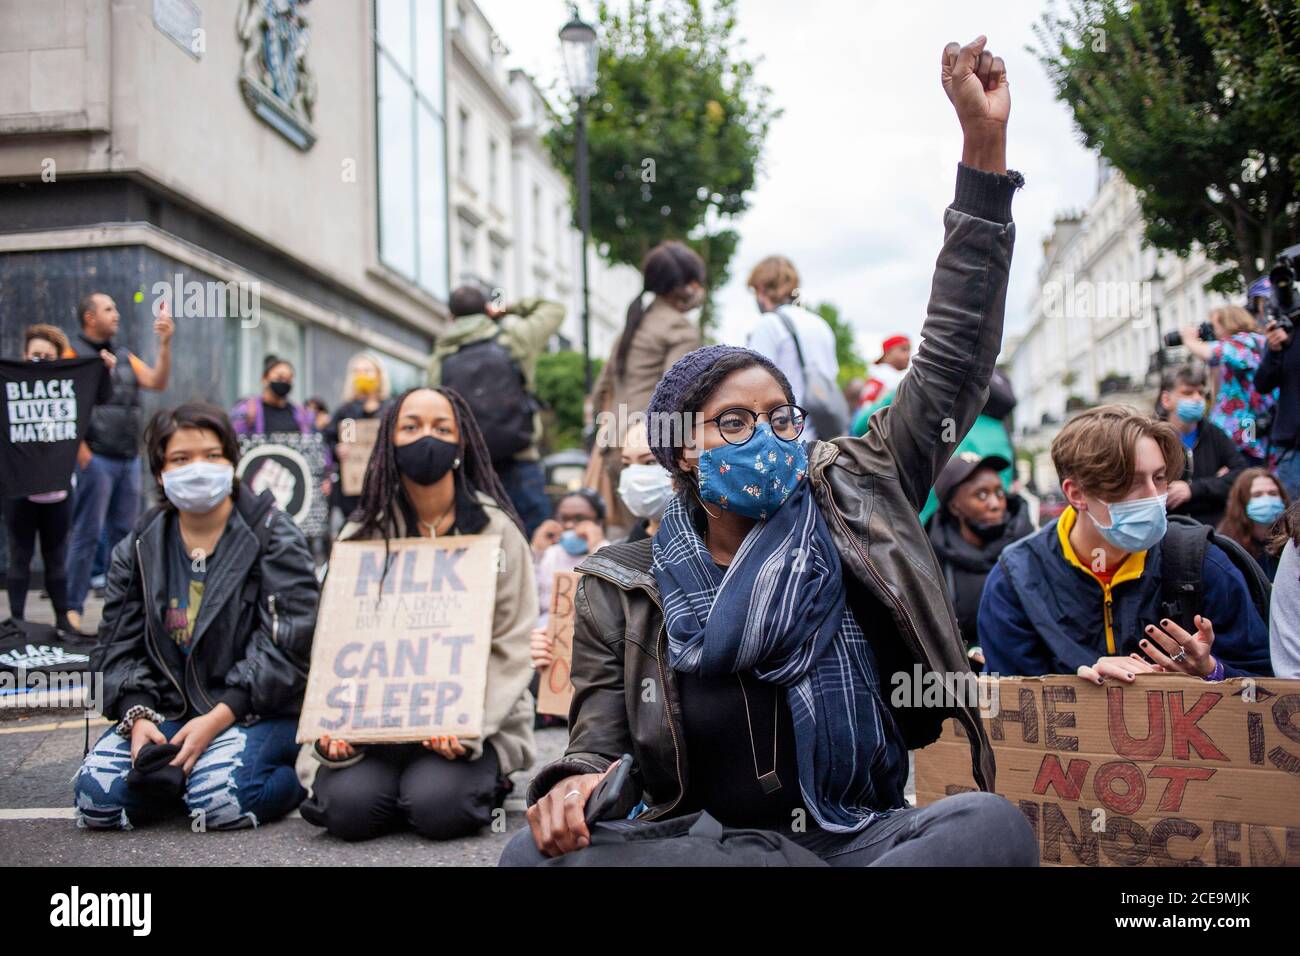 Londres, Royaume-Uni. 30 août 2020. Des millions de personnes défilent de Notting Hill à Marble Arch. Protester contre la brutalité policière aux États-Unis et au Royaume-Uni crédit: Neil Banque D'Images